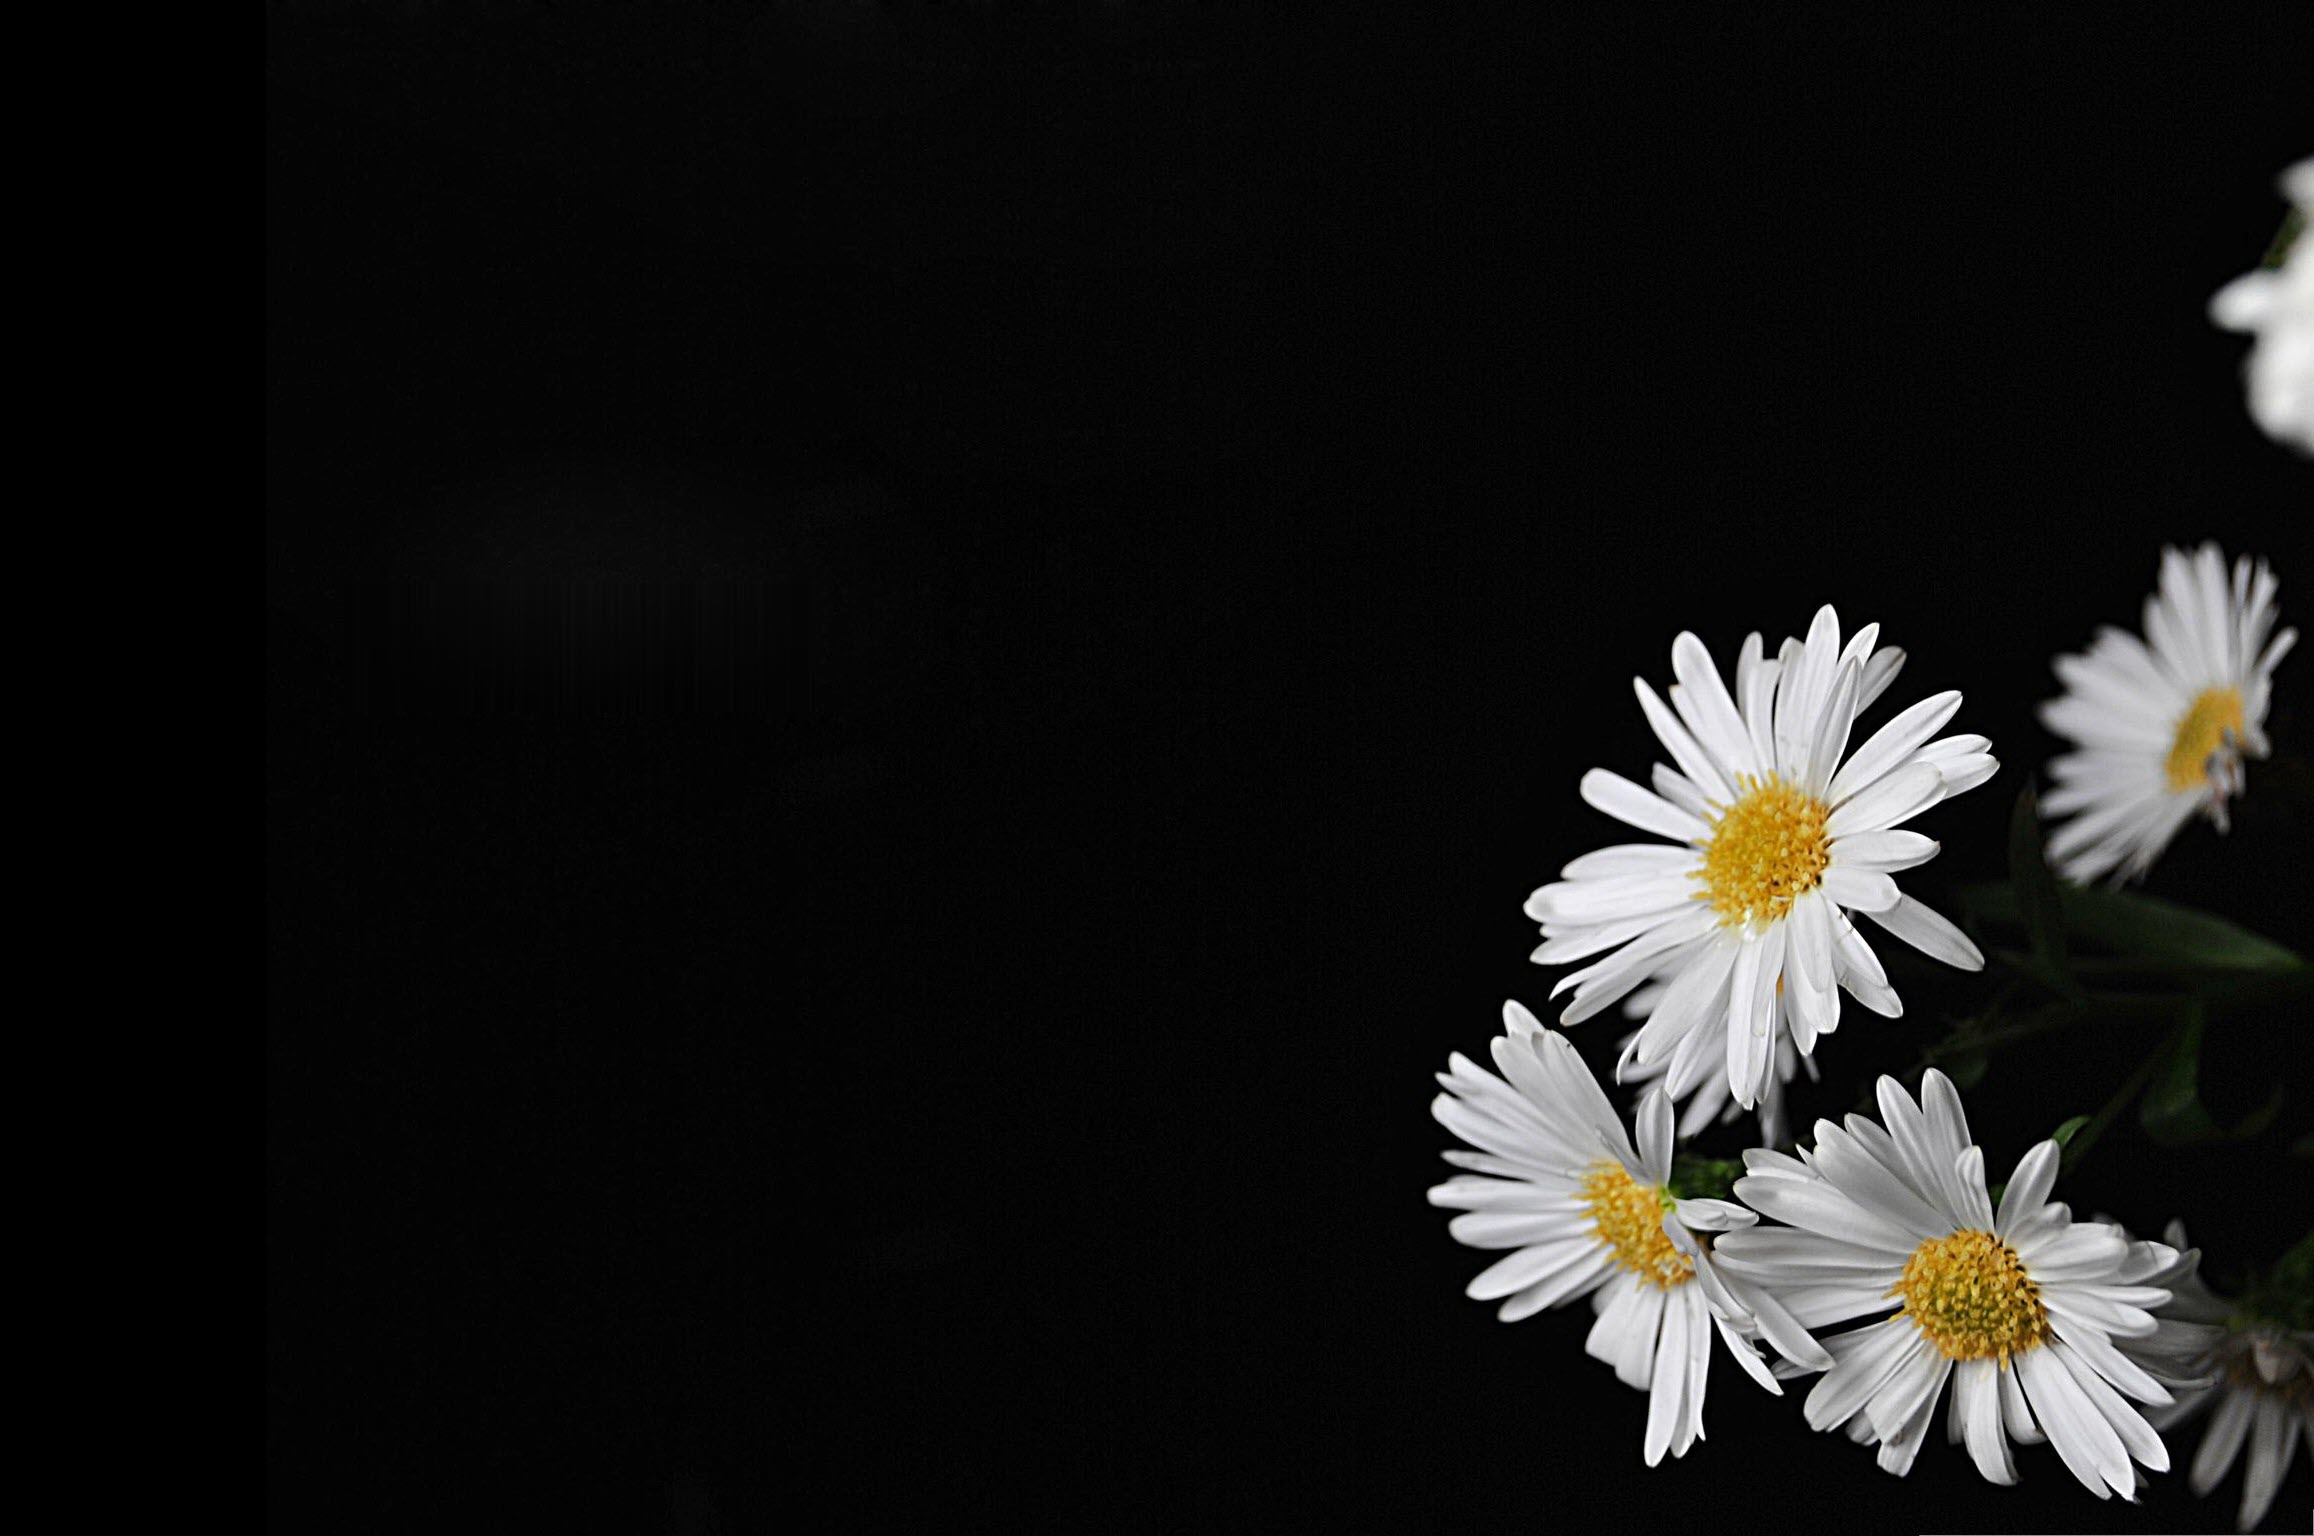 Hình ảnh hoa cúc trắng nền đen đẹp nhất